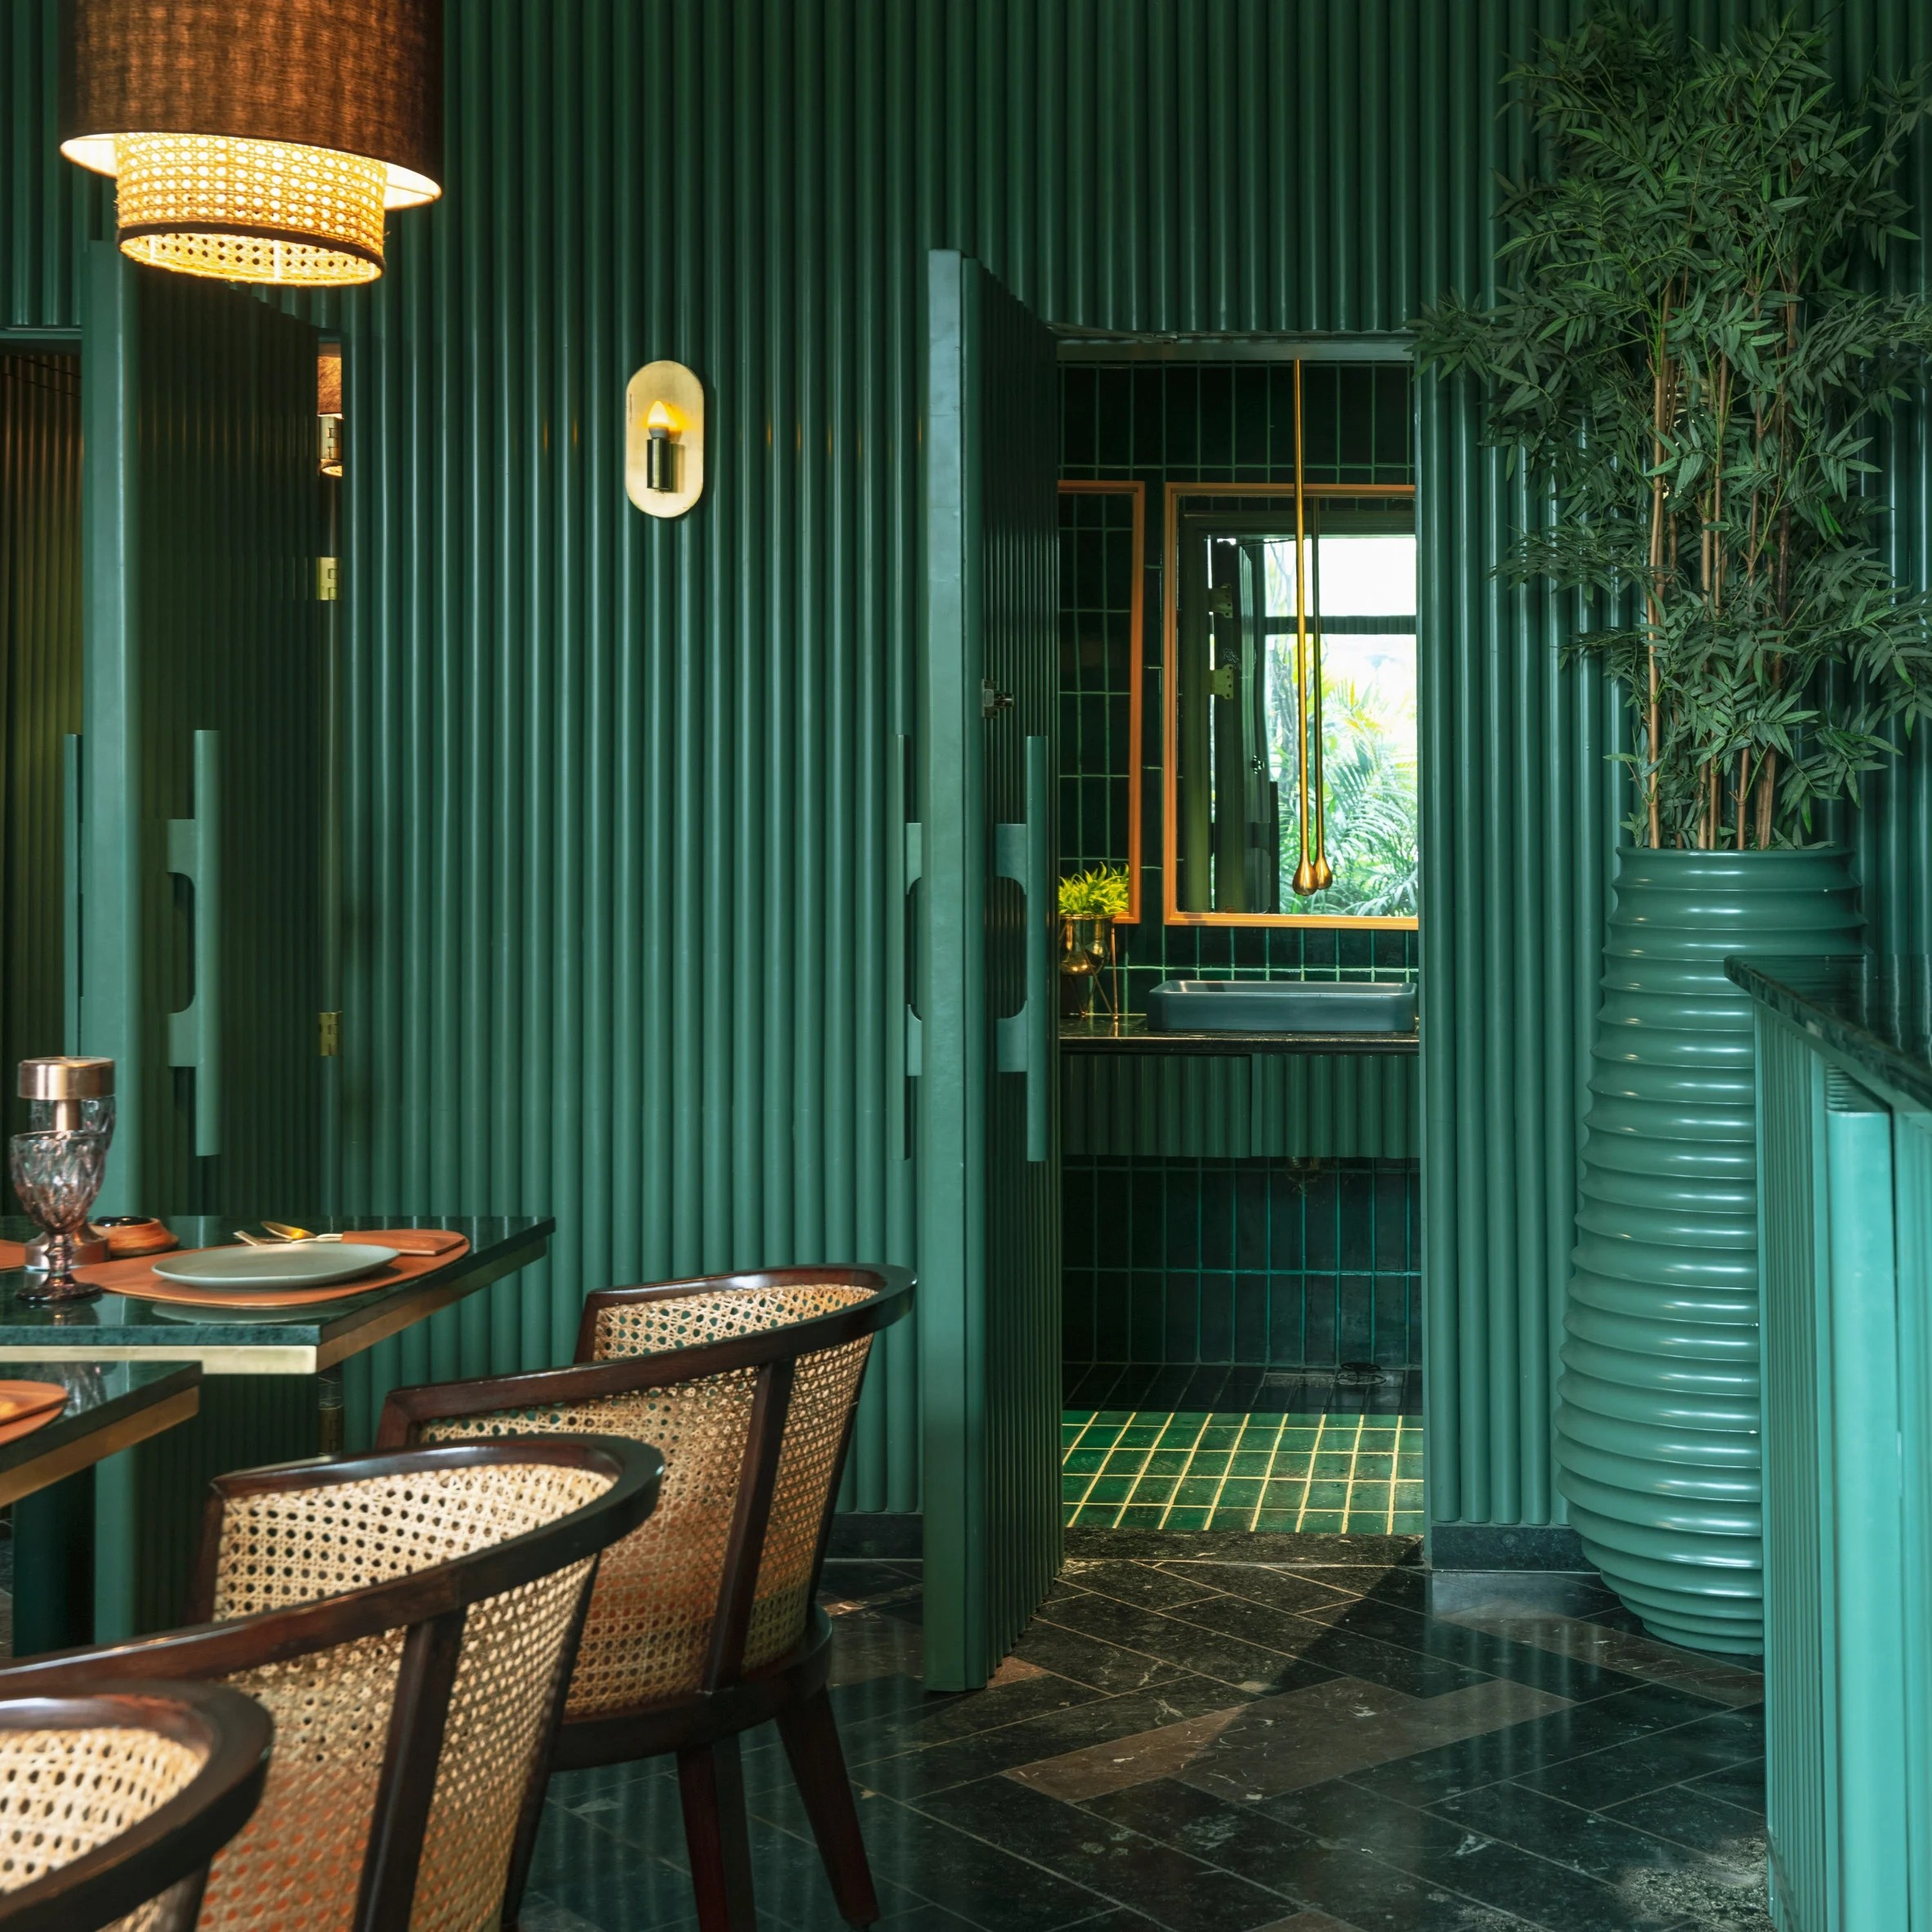 elgin-cafe-renesa-architecture-interior-india-restaurant-dezeen-2364-col-square.jpg